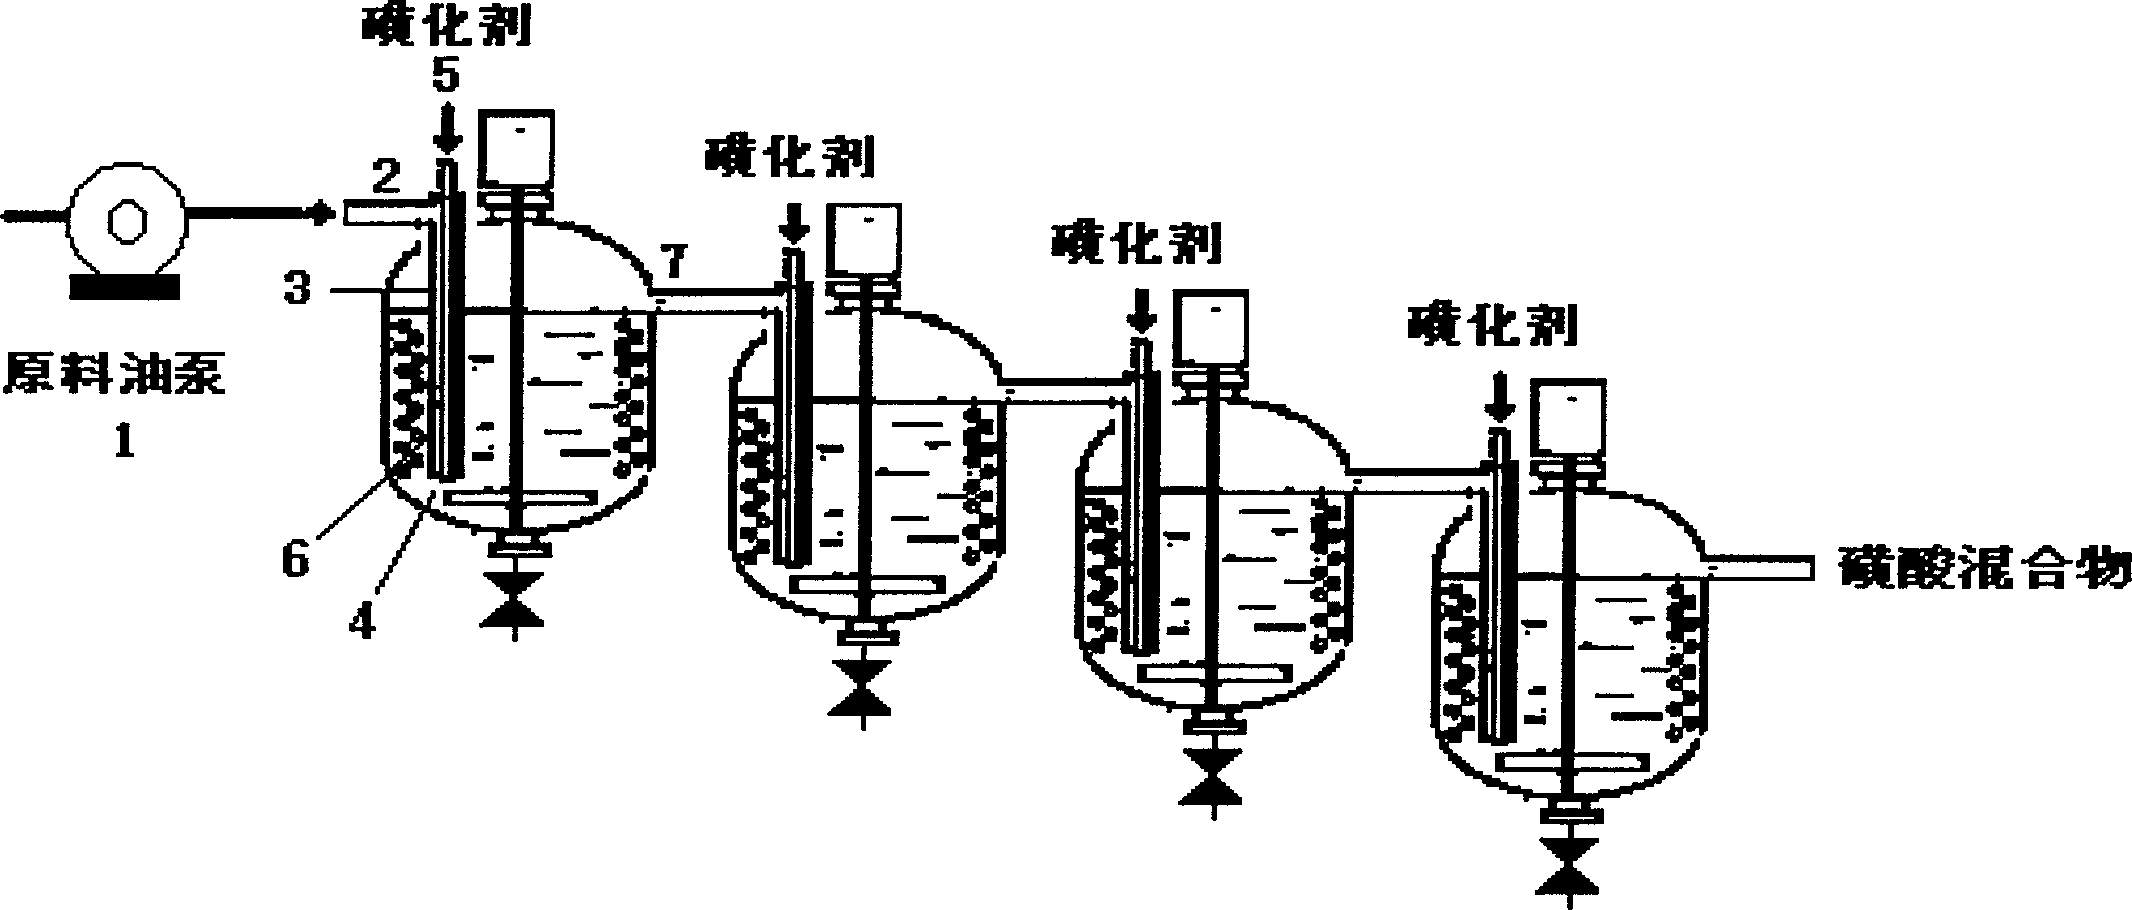 Continuous preparing method for petroleum sulfosalt